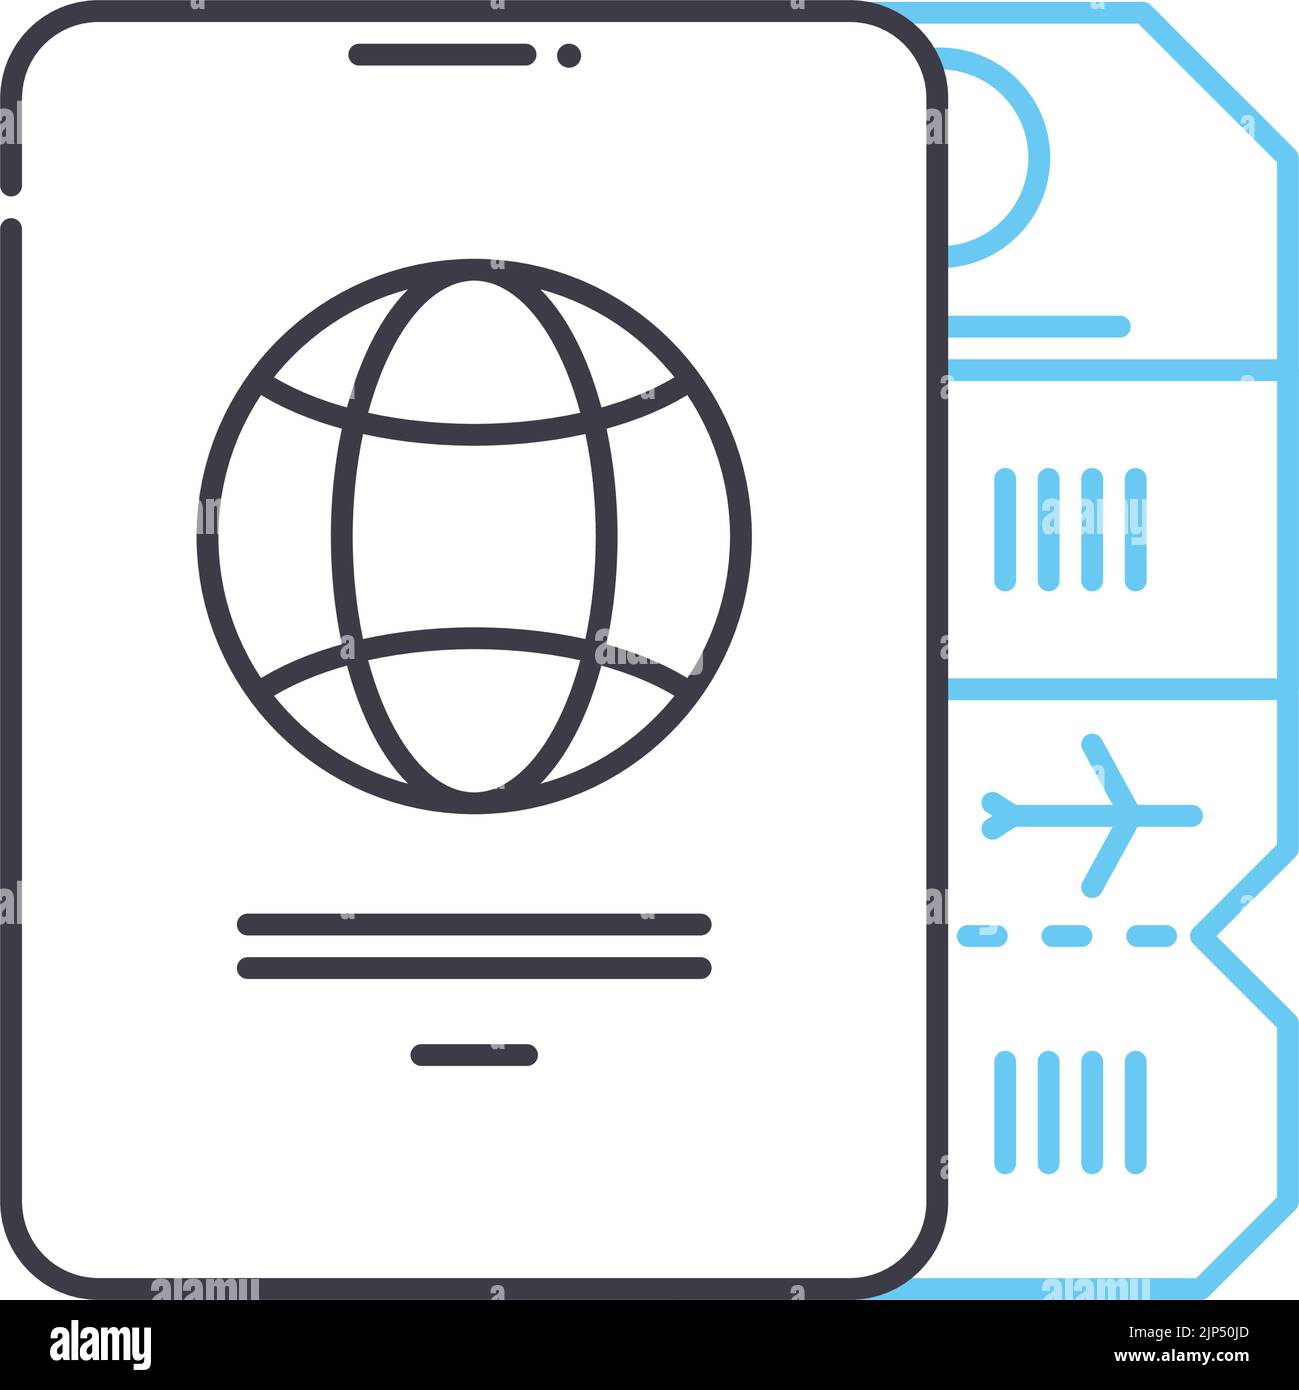 Flugticket mit Passzeilensymbol, Umrisssymbol, Vektorgrafik, Konzeptschild Stock Vektor